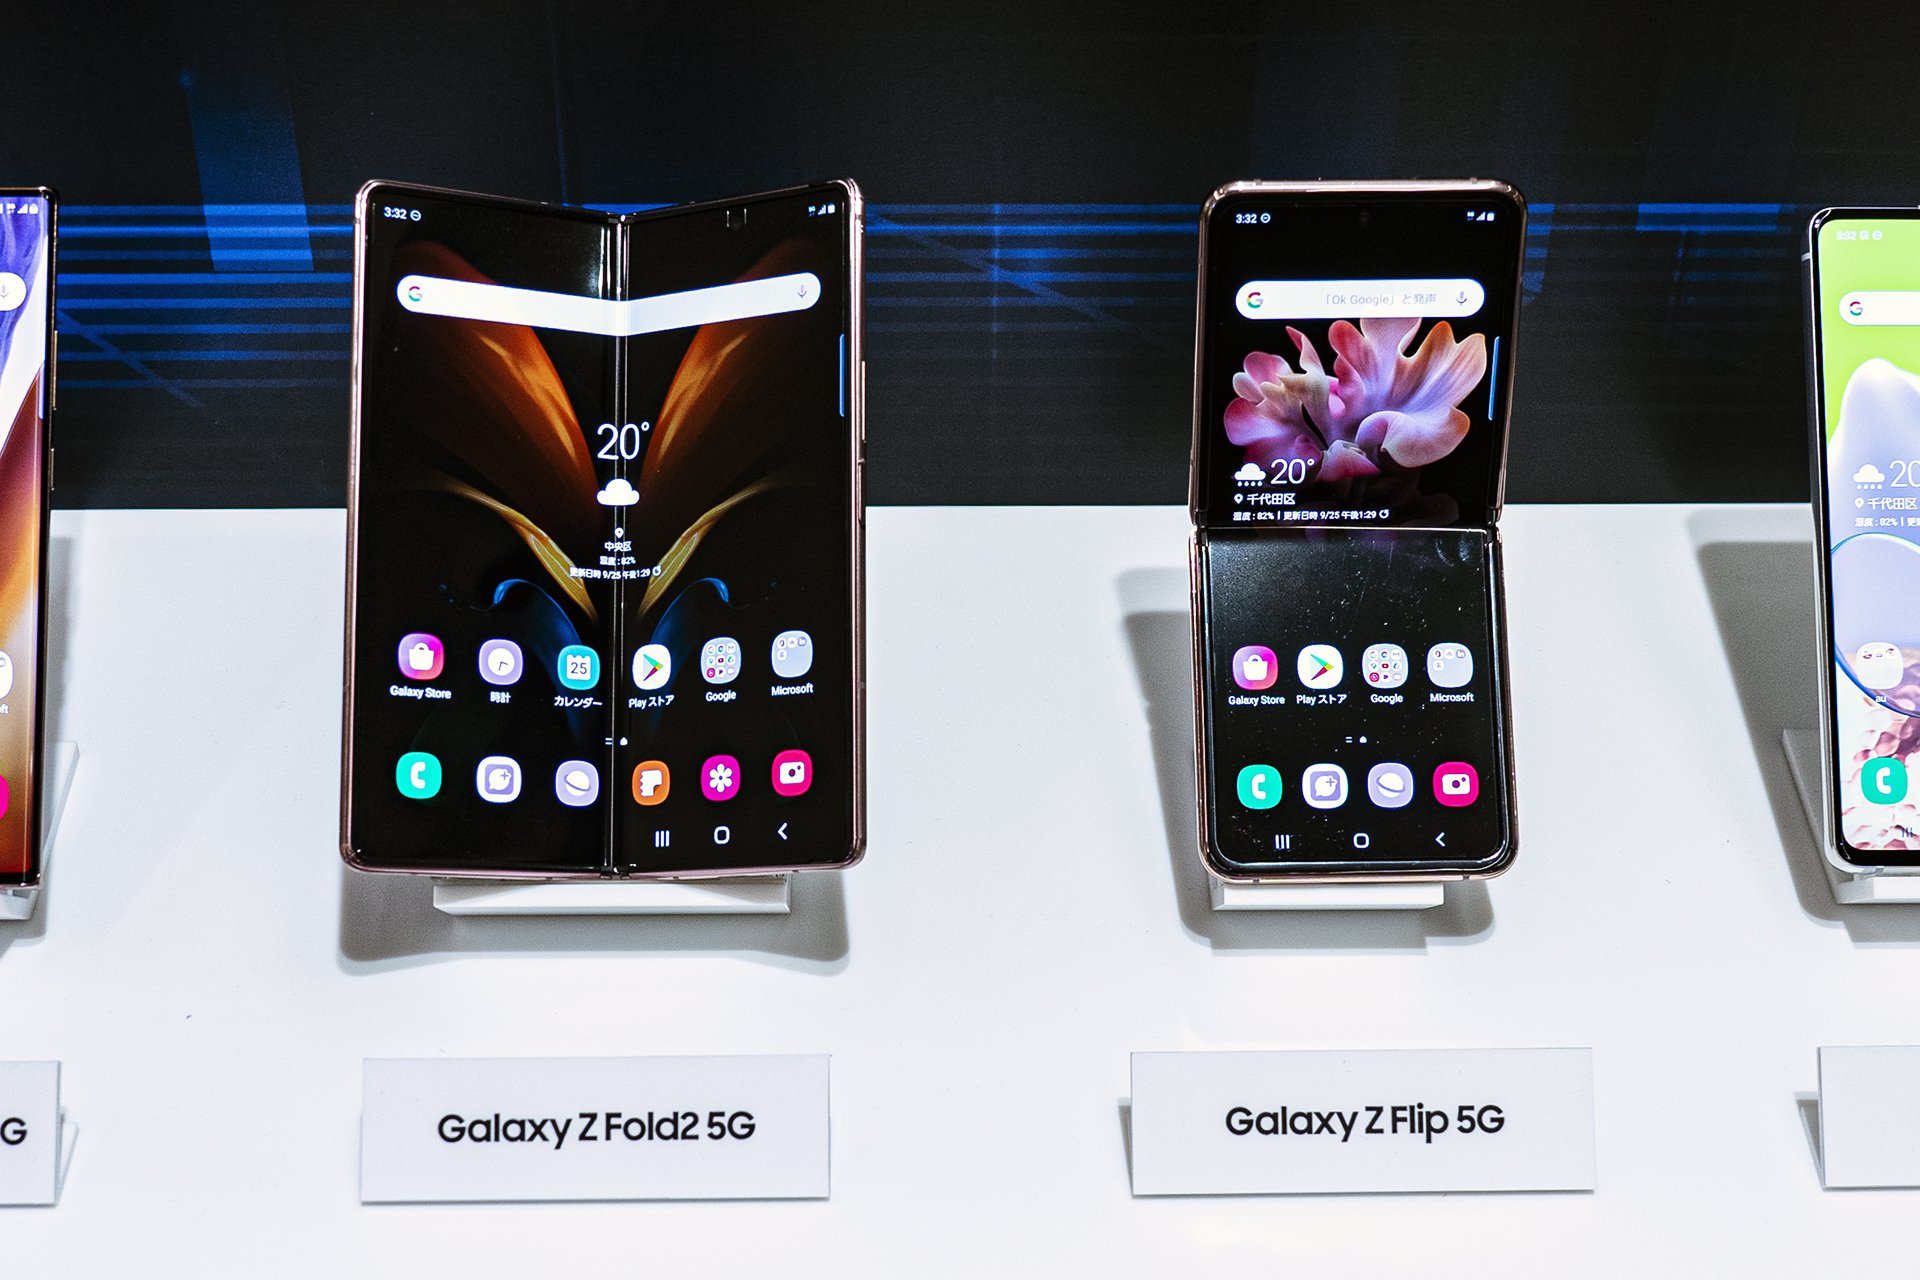 新発表の6機種のうち、折りたたみスマホ「Galaxy Z Fold2 5G」と「Galaxy Z Flip 5G」はau独占で投入する